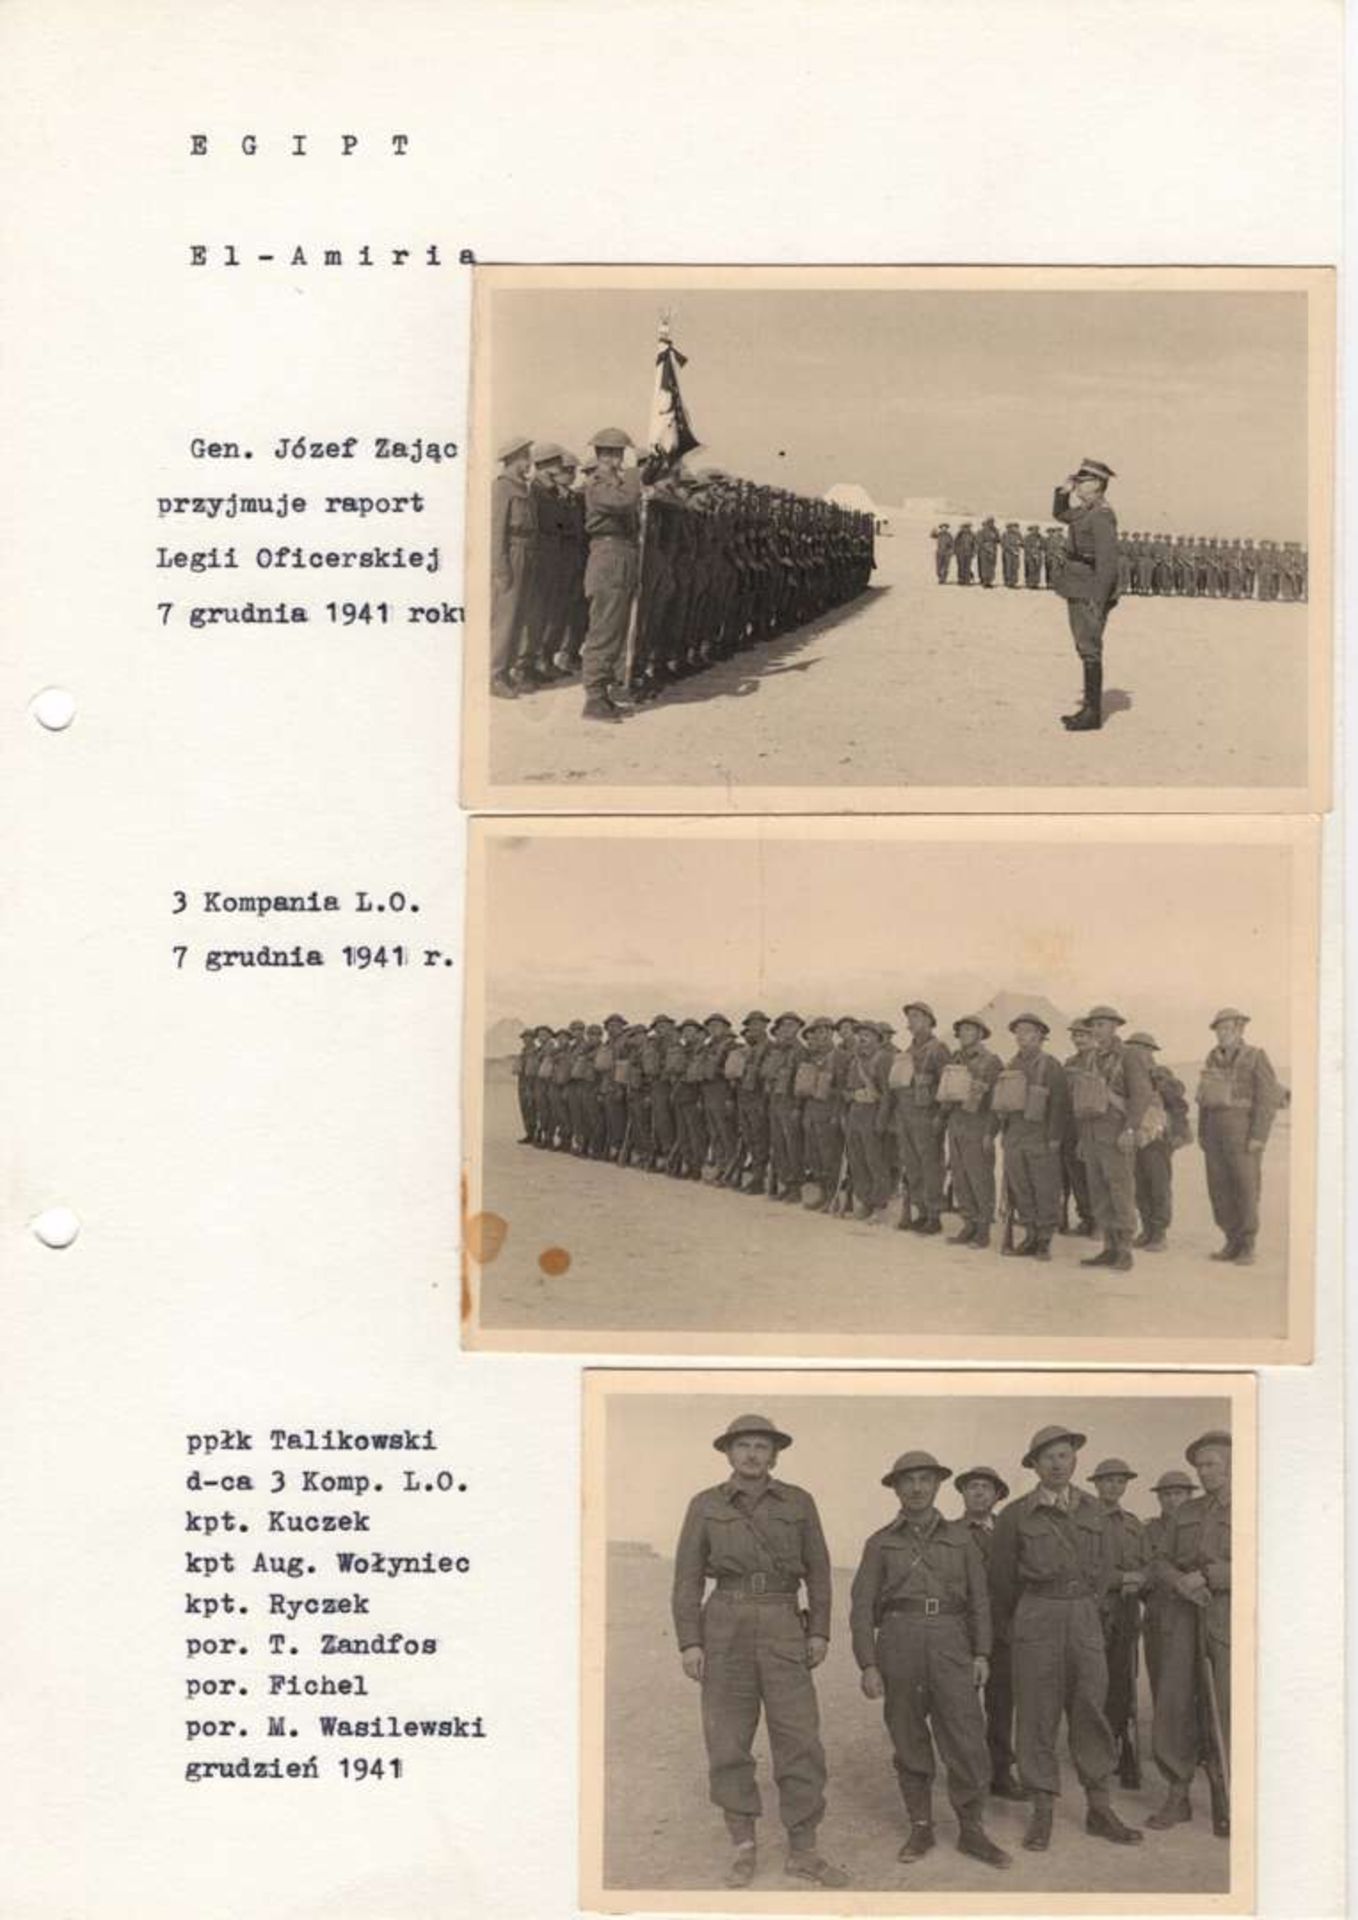 WW2 Polish Photos from Egypt - El-Amiria 1941 - Officer's Legion, General Józef Zając